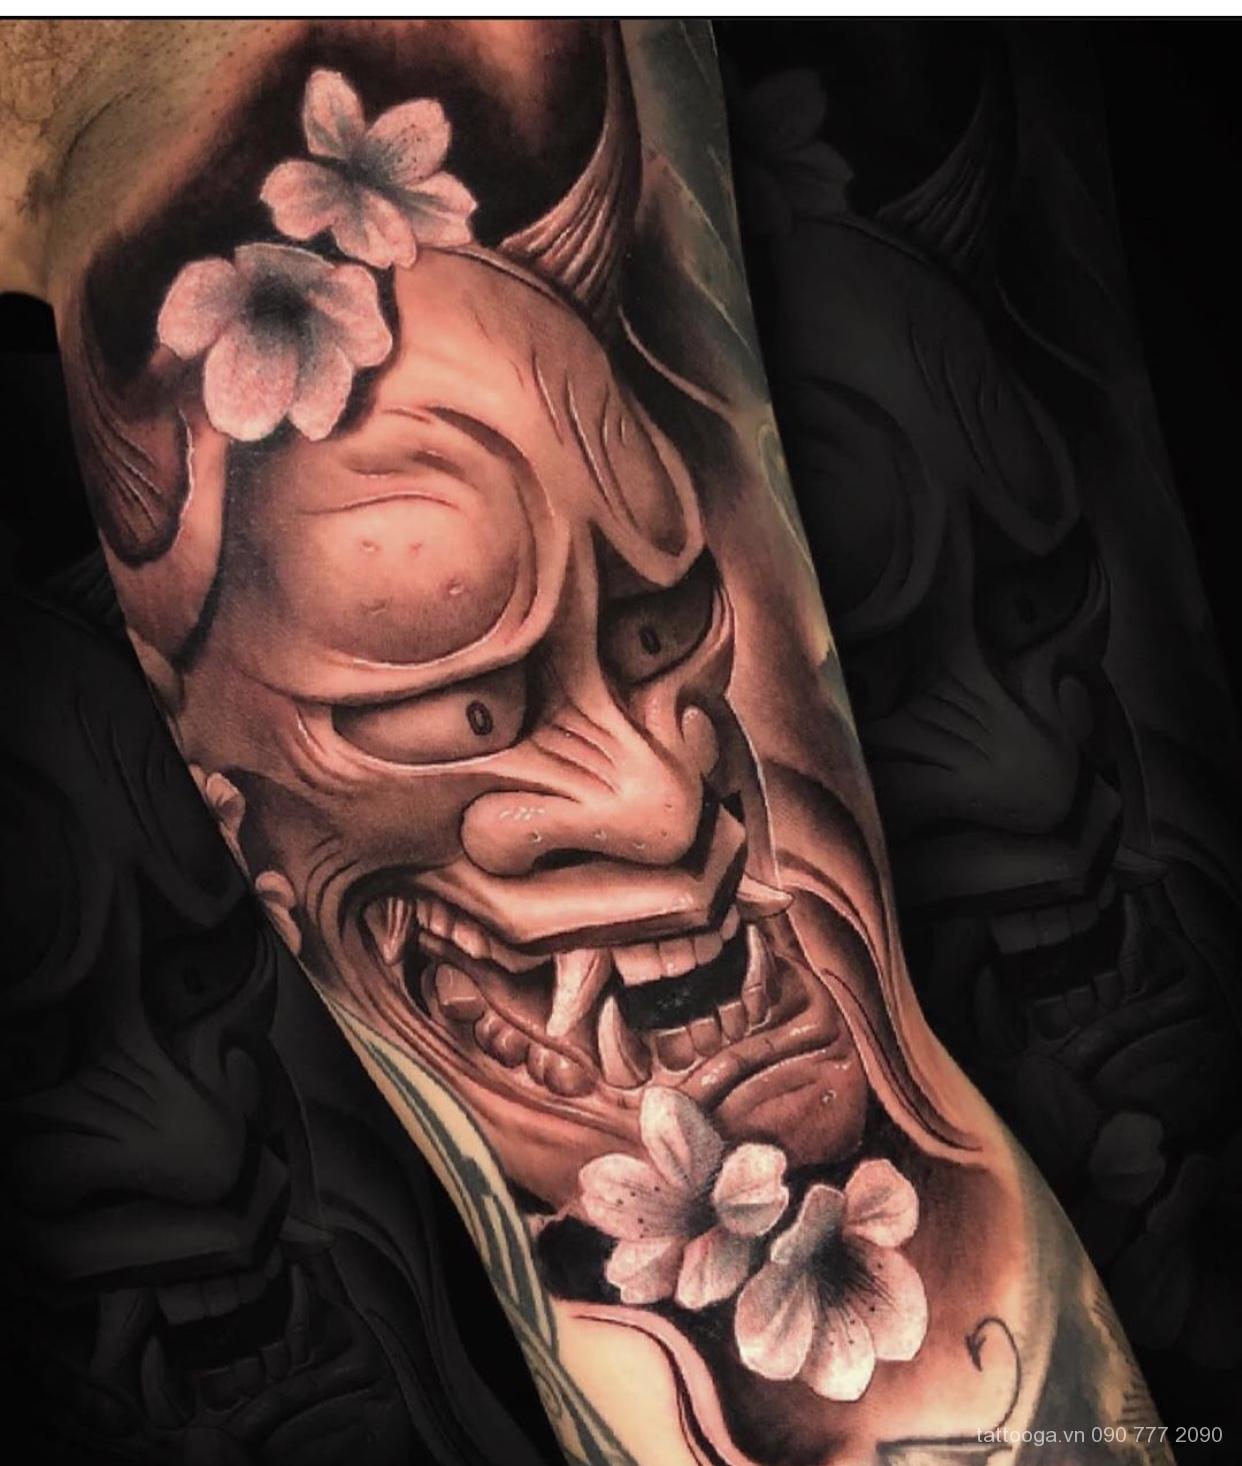 Ý nghĩa 20 hình xăm mặt quỷ Oni đẹp nhất Nhật Bản  Oni tattoo  y nghia  hinh xam mat quy hanya  hình xăm quỷ hanya   Hình xăm